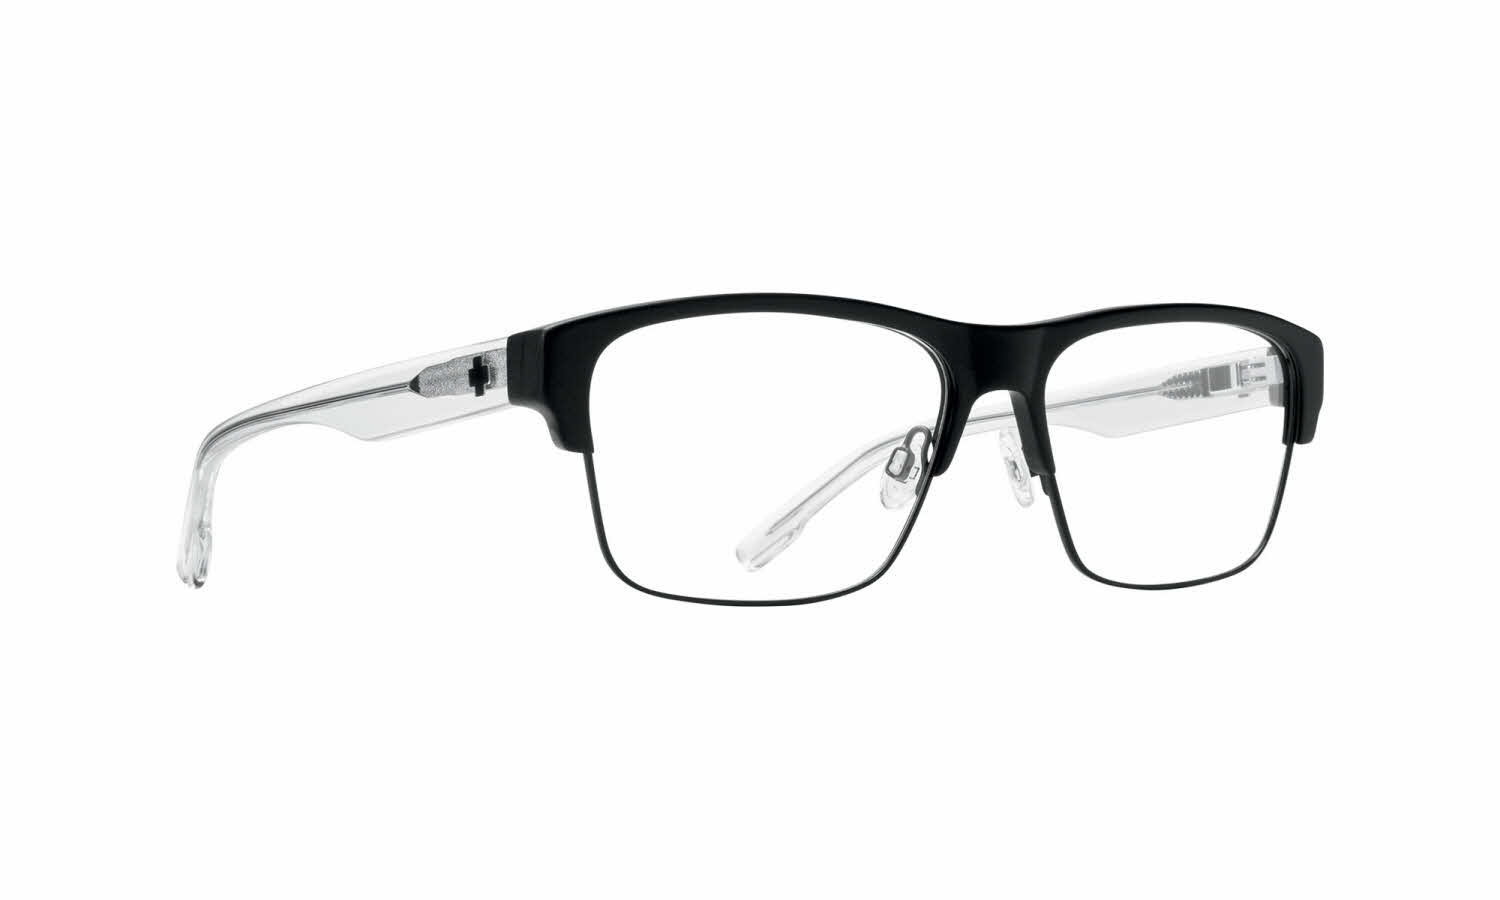 Spy Brody 5050 Eyeglasses